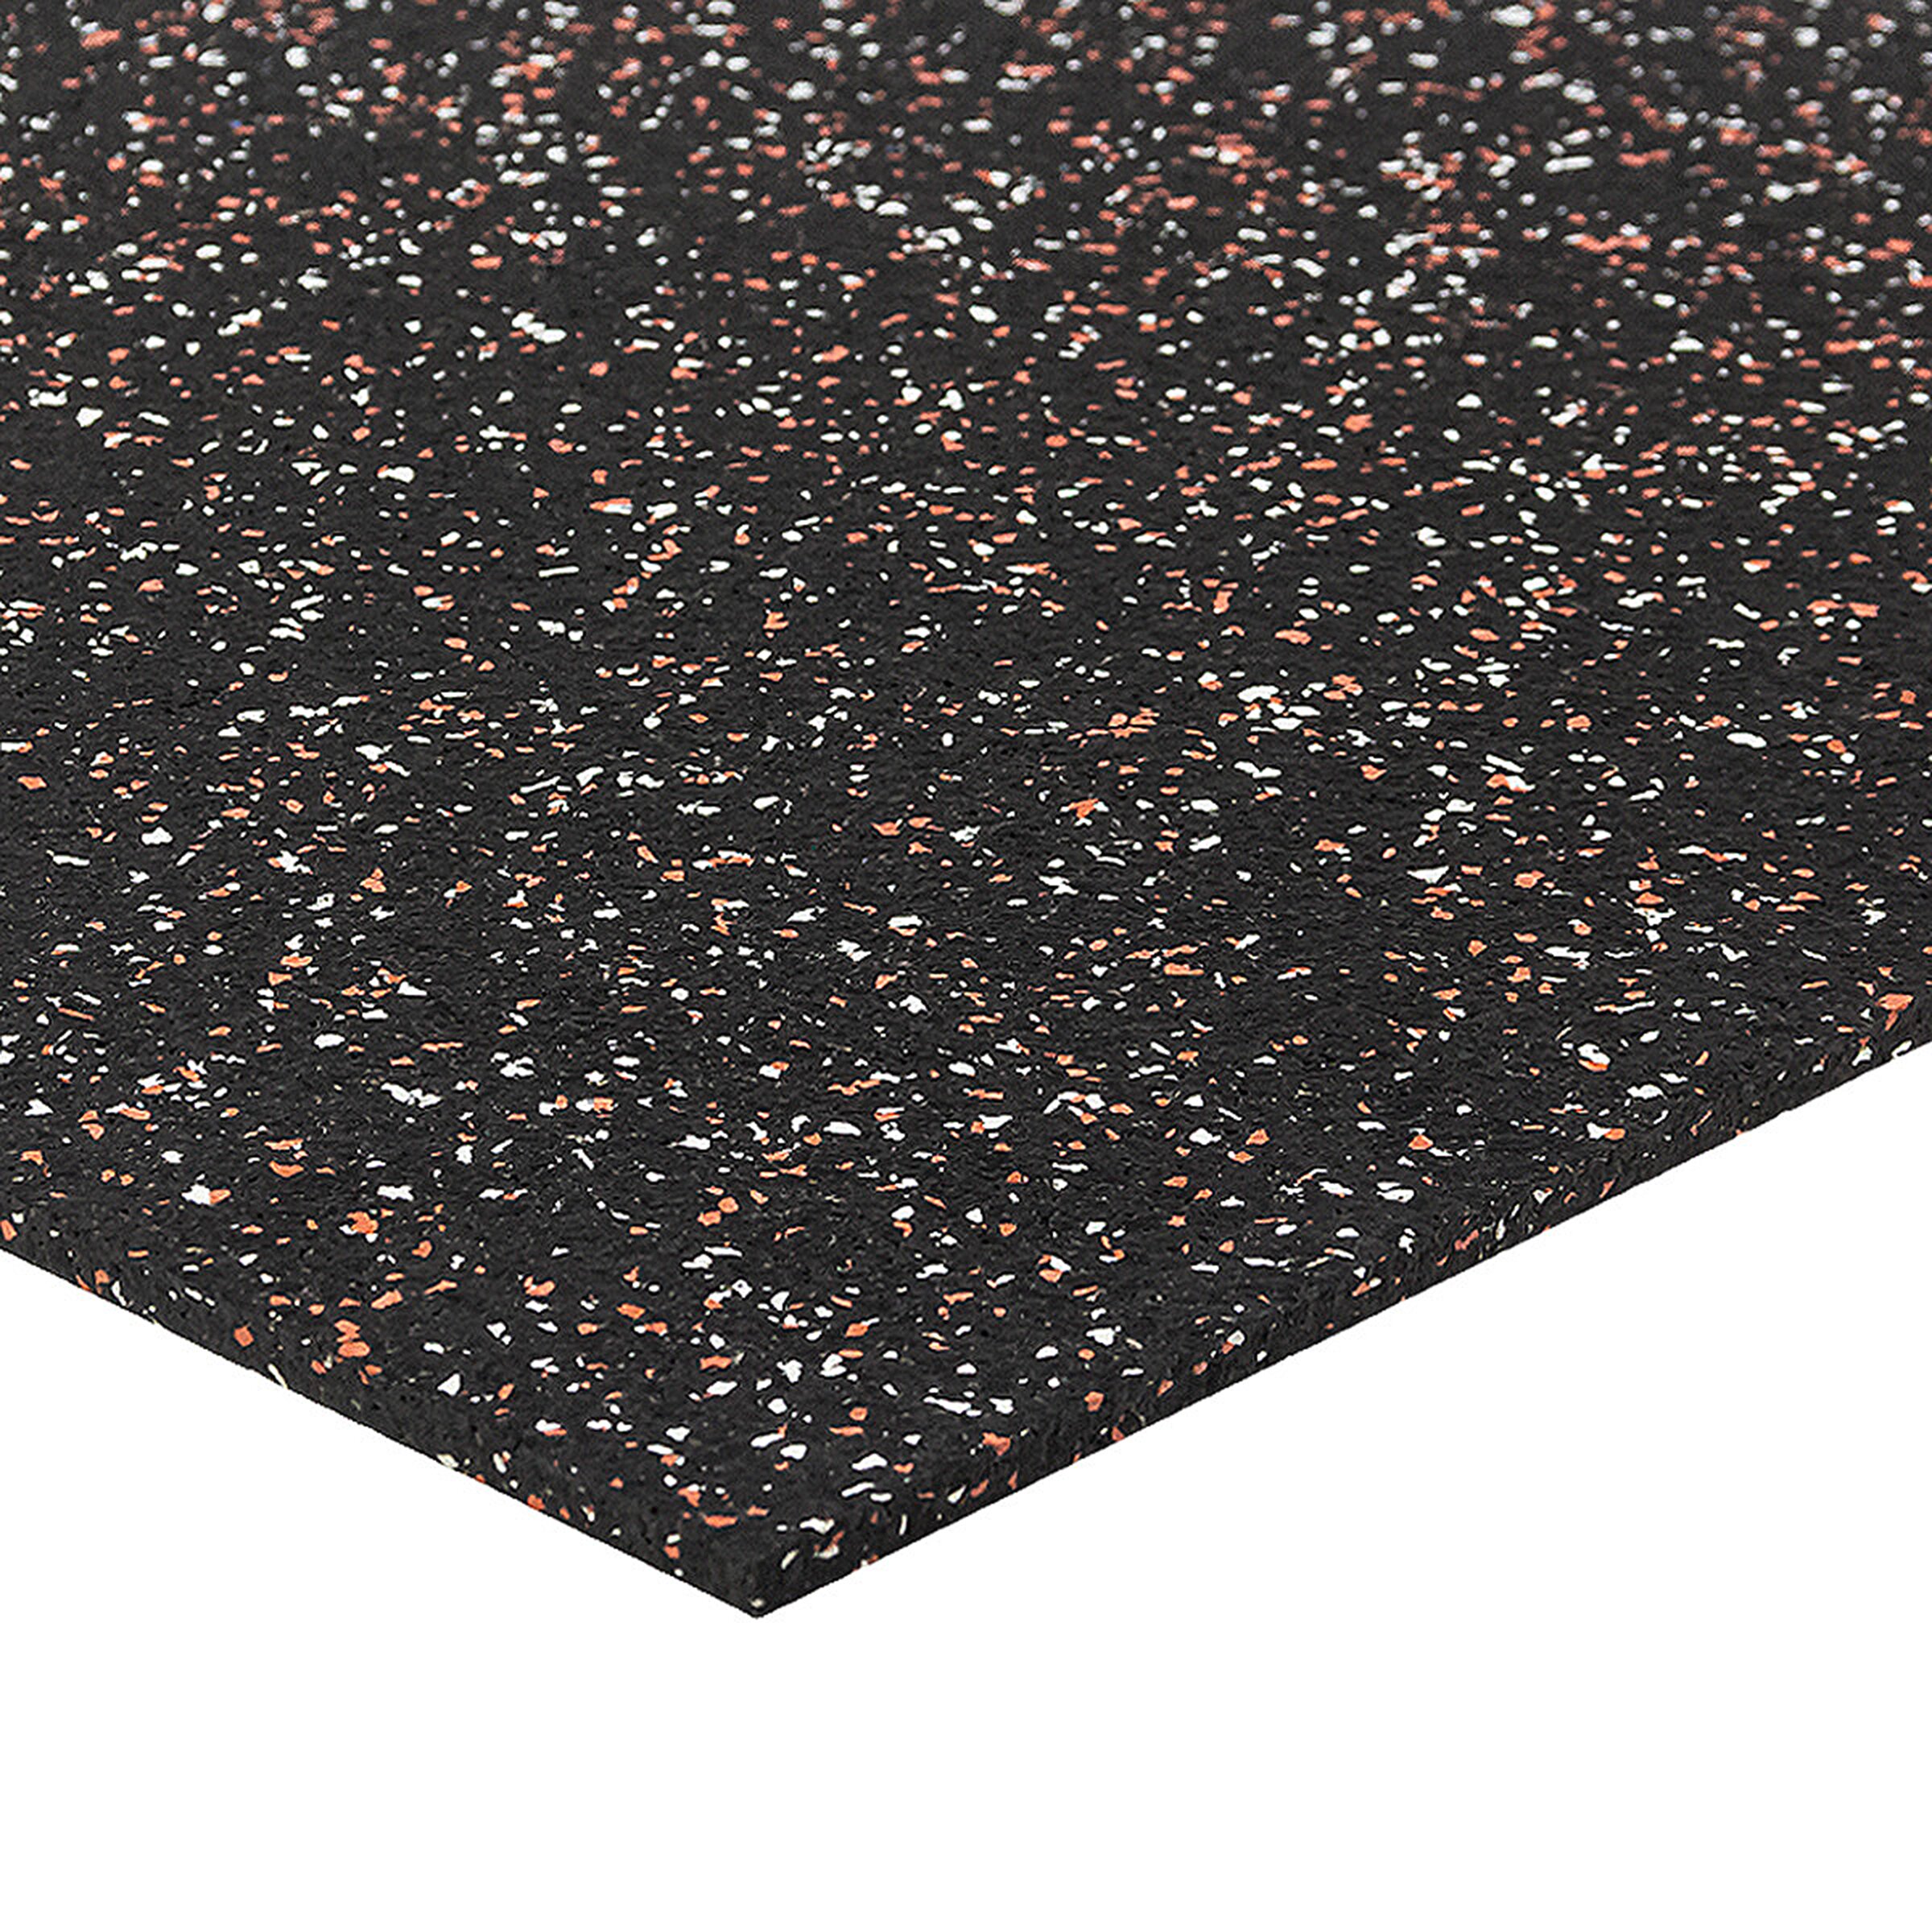 Čierno-bielo-červená podlahová guma (puzzle - okraj) FLOMA FitFlo SF1050 - dĺžka 50 cm, šírka 50 cm, výška 0,8 cm